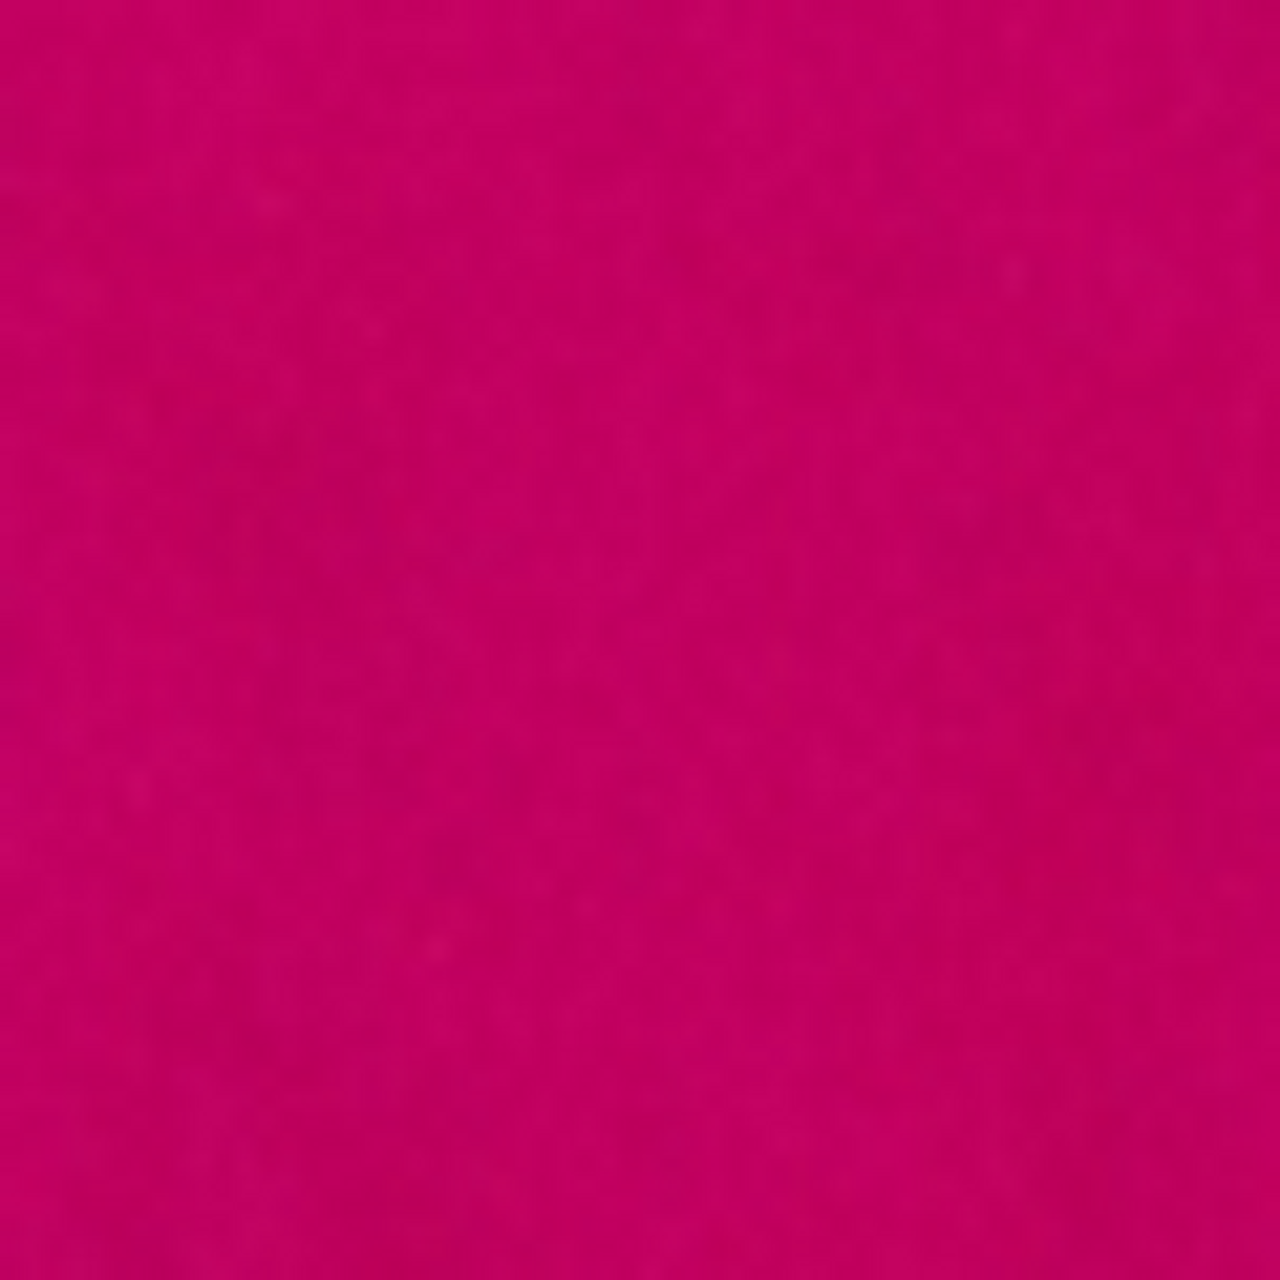 Edm 40ºC Garnet Clothes Dye Pink